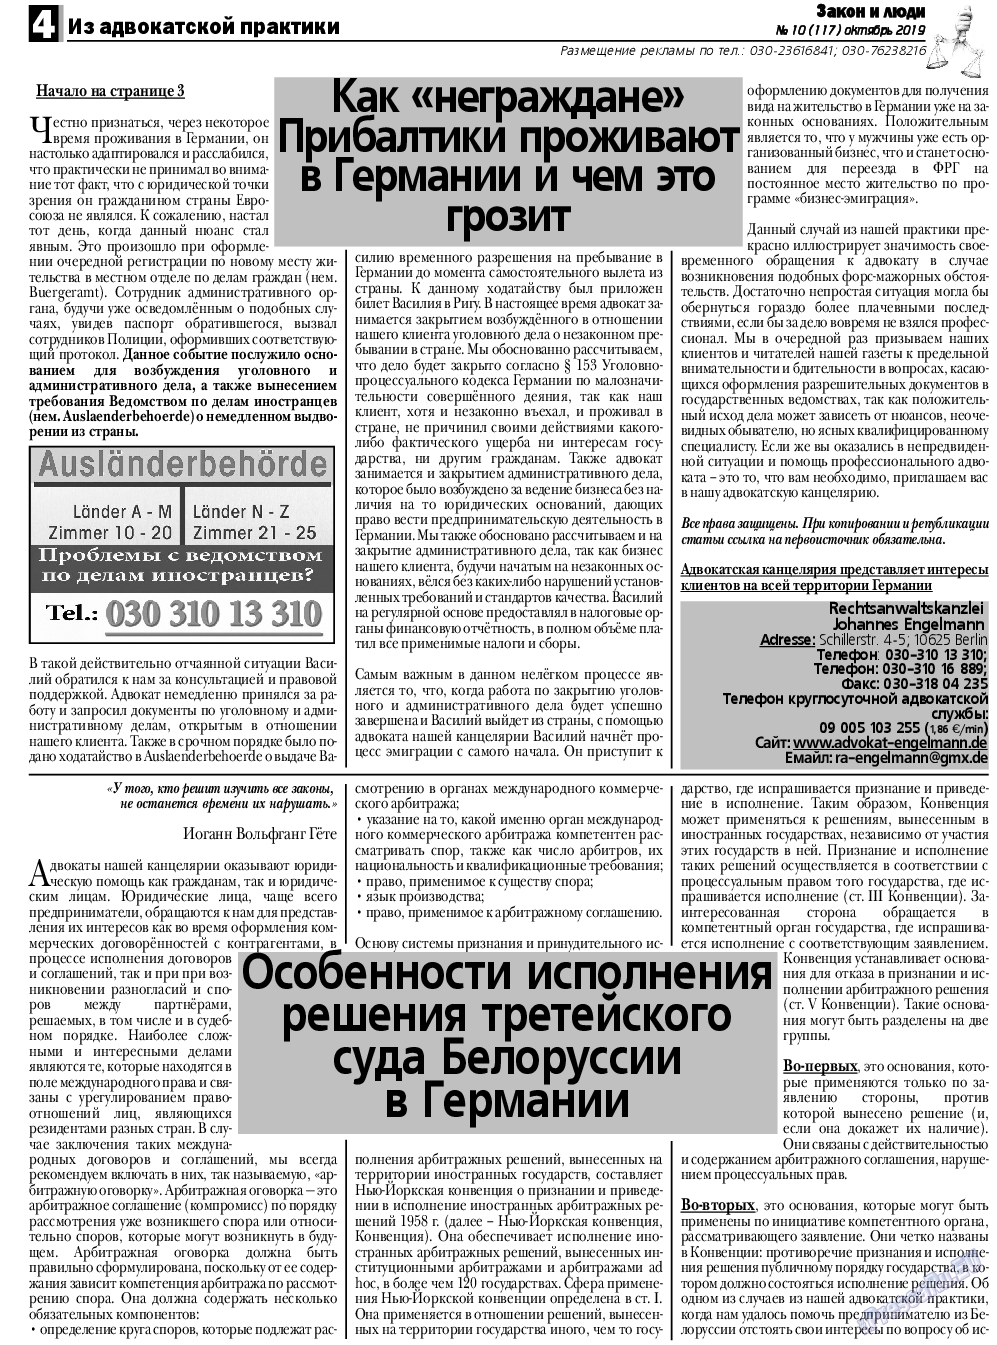 Закон и люди, газета. 2019 №10 стр.4